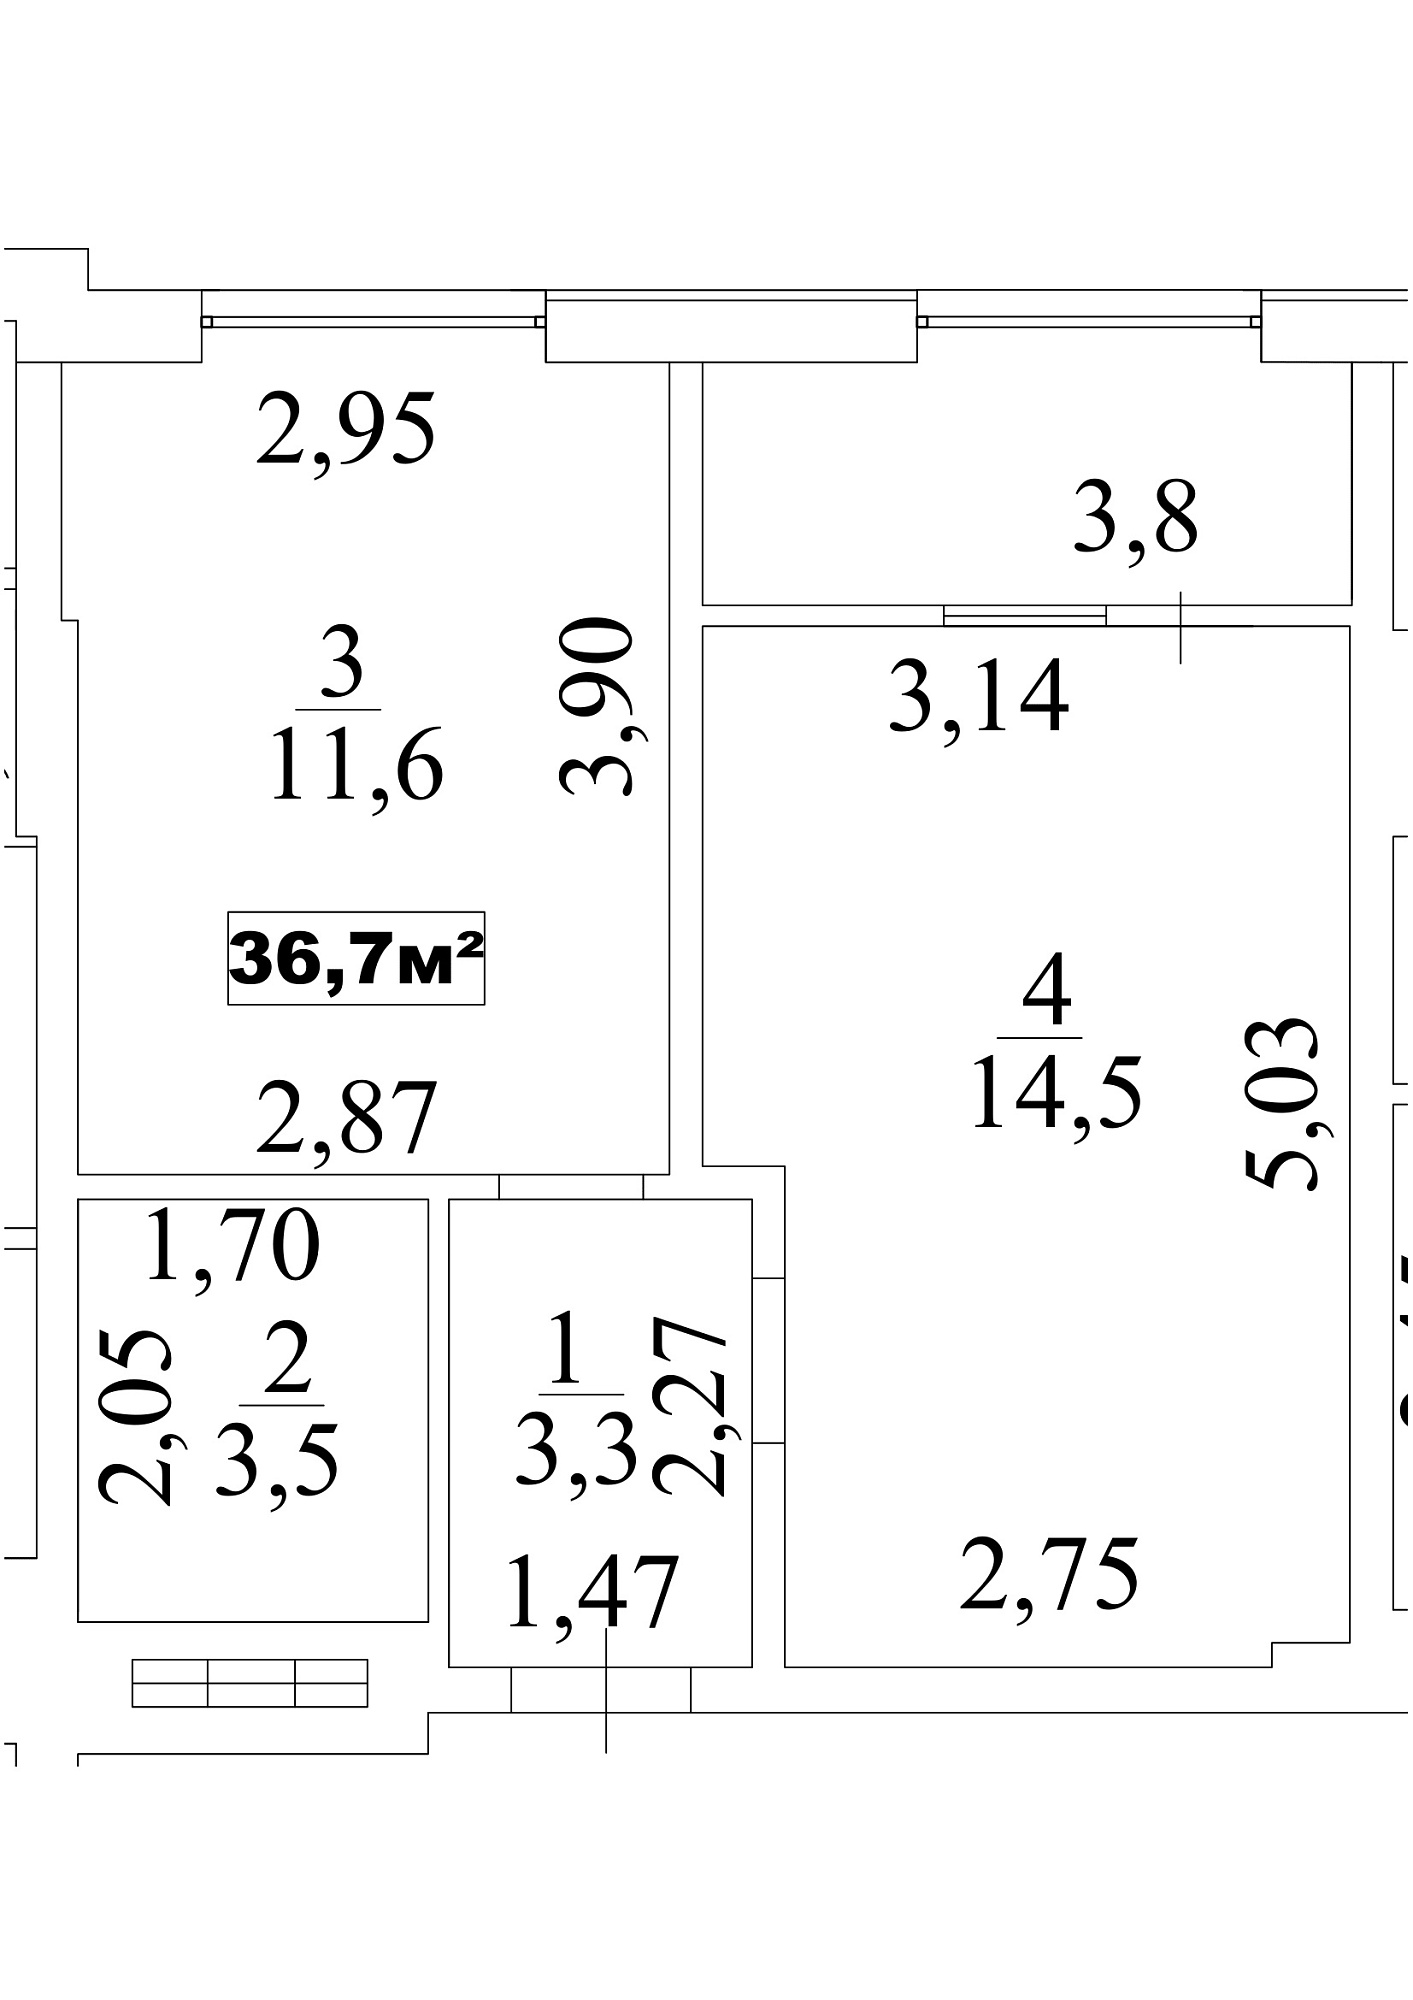 Планировка 1-к квартира площей 36.7м2, AB-10-01/00006.